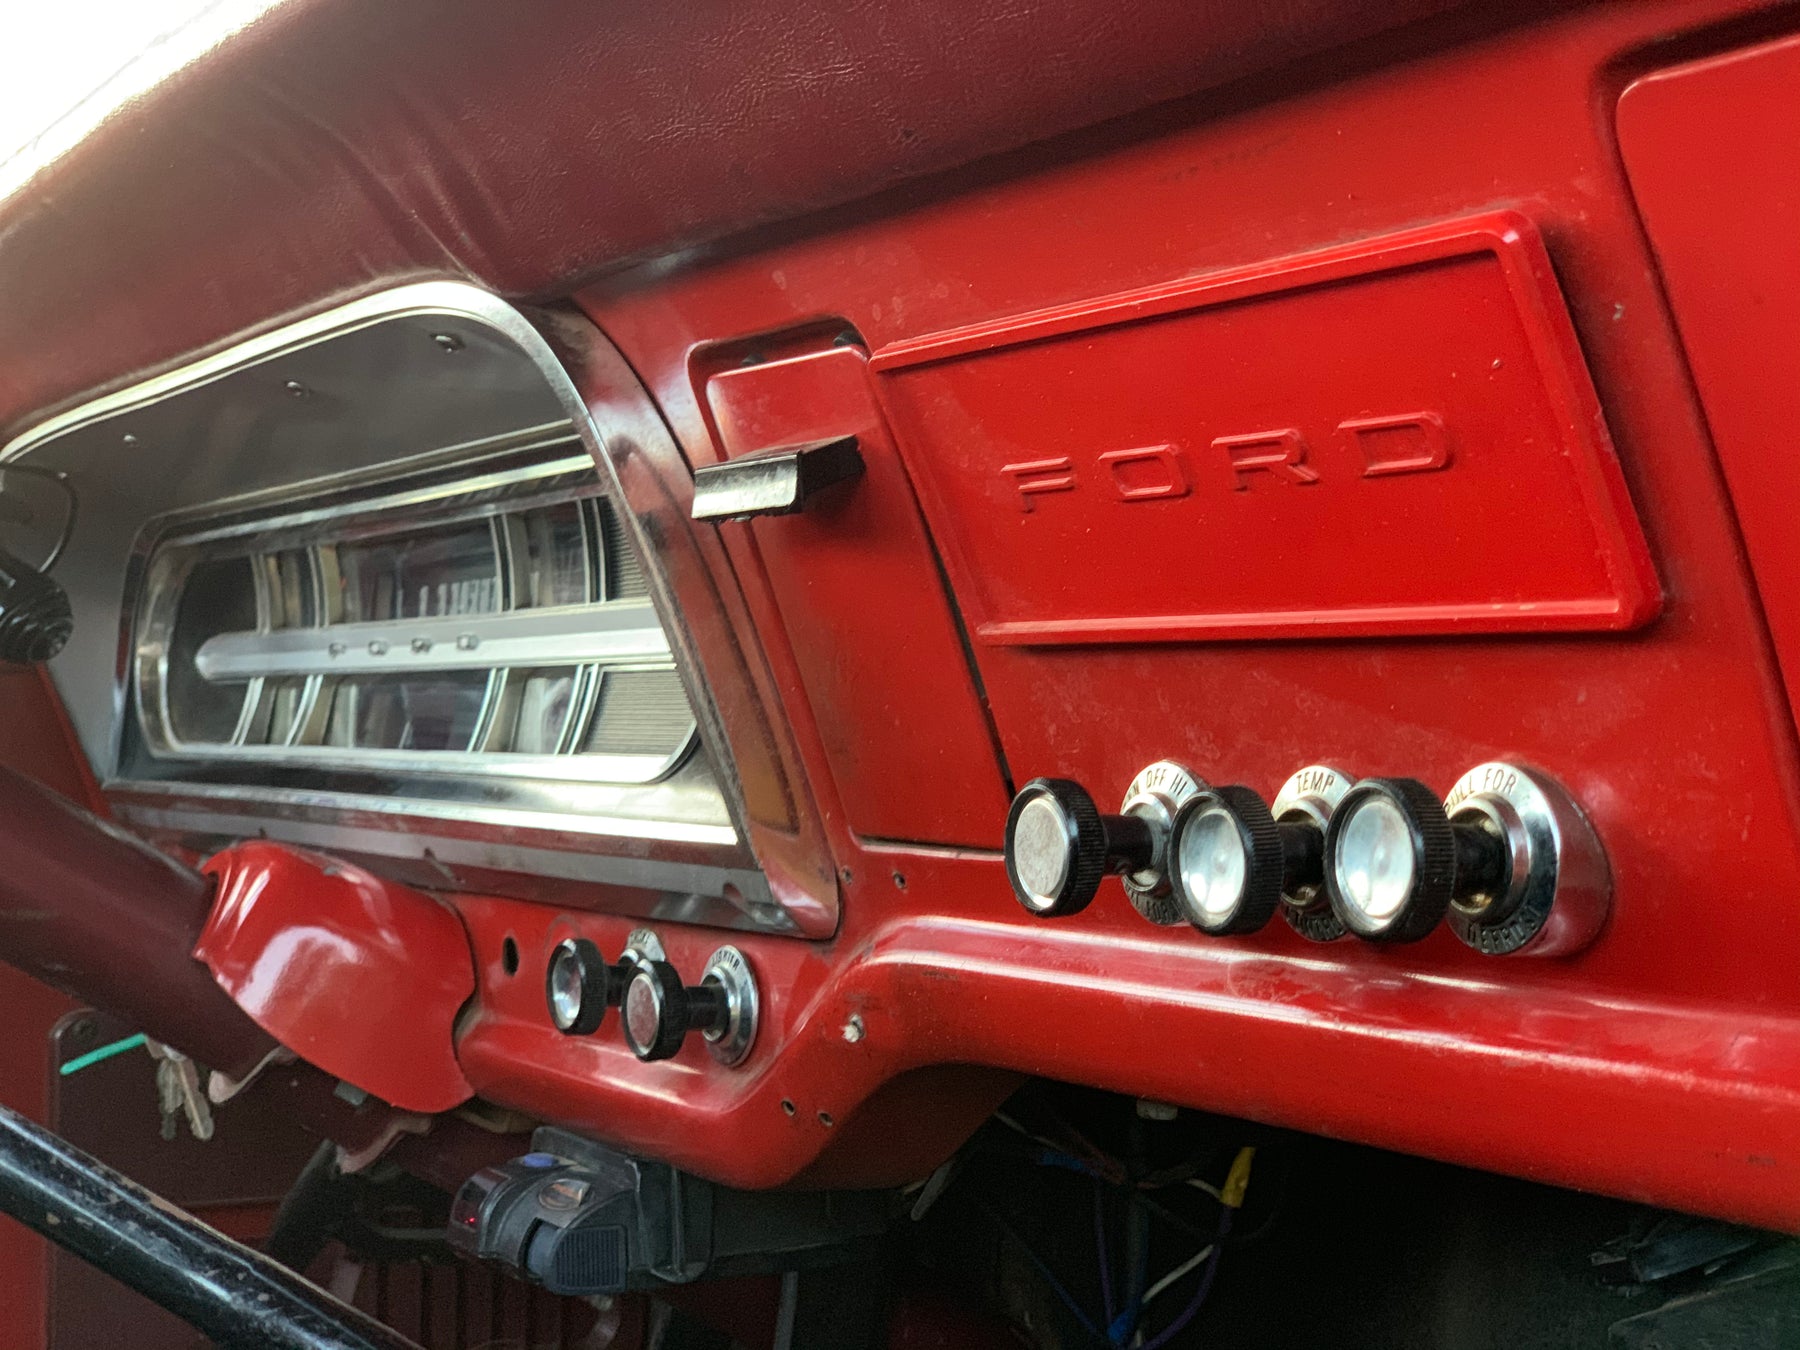 1967 Ford F-250 4x4 Fire Truck FINE ART PRINT